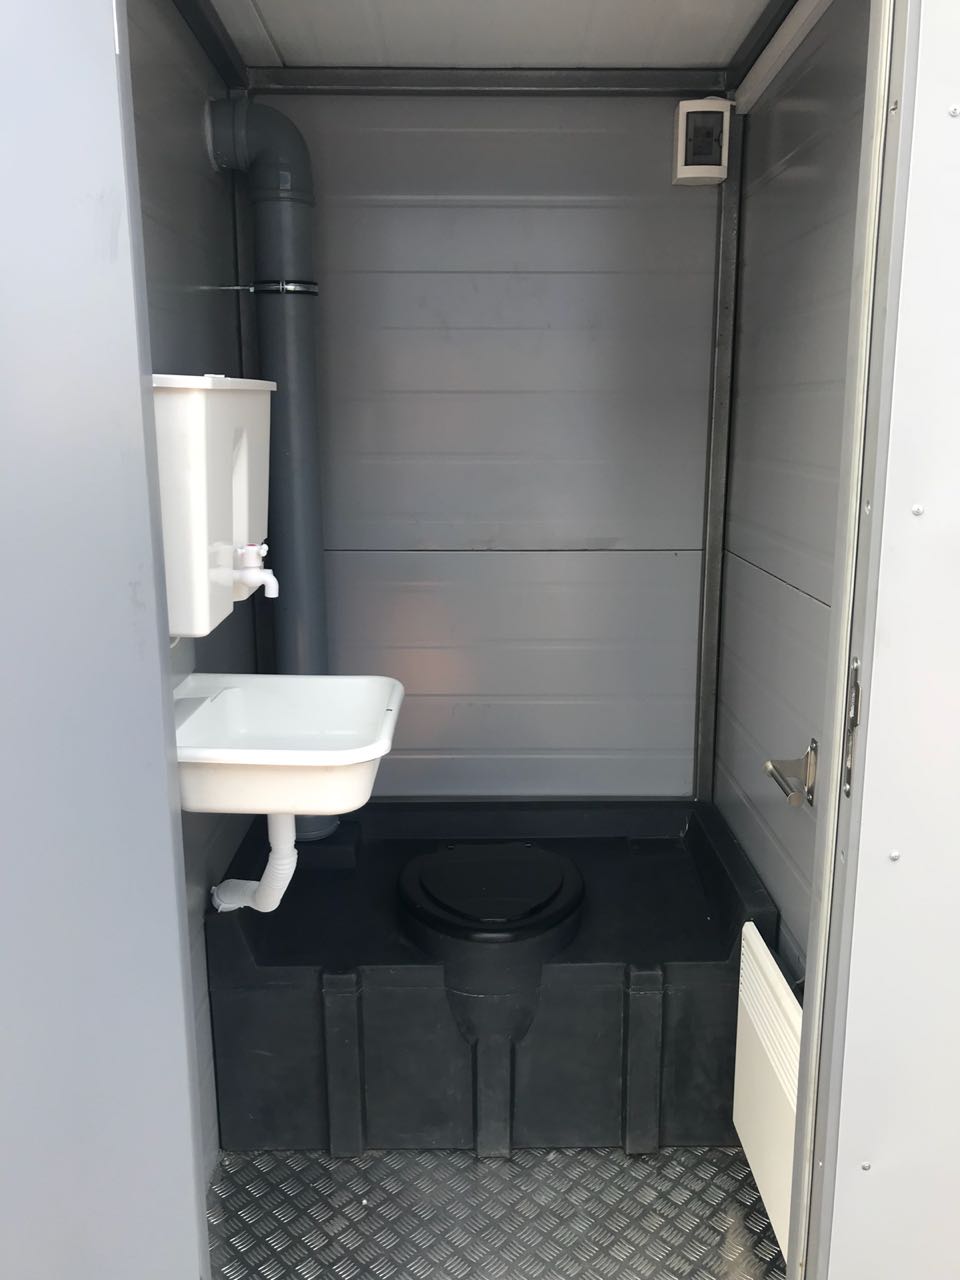 Теплая туалетная кабина ЭКОС-1 (фото 2) в Москве